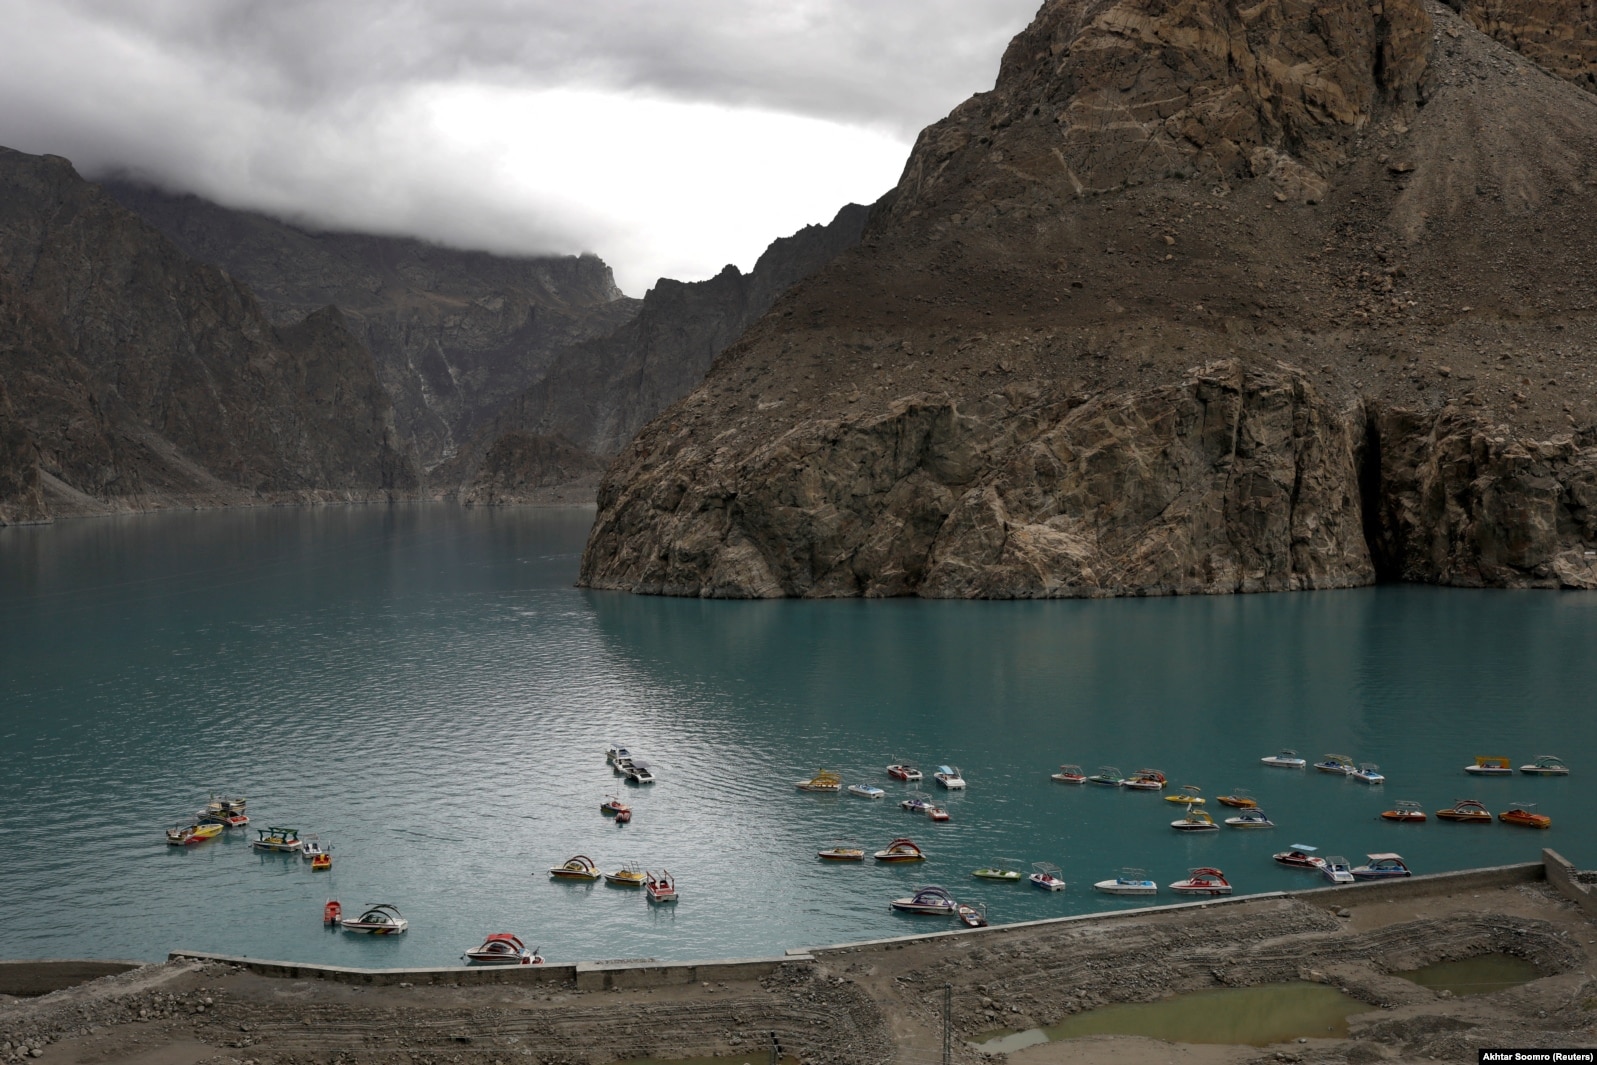 Varkat e mbledhura në liqenin Attabad, i cili u formua për shkak të rrëshqitjes së dheut në vargun malor Karakoram.